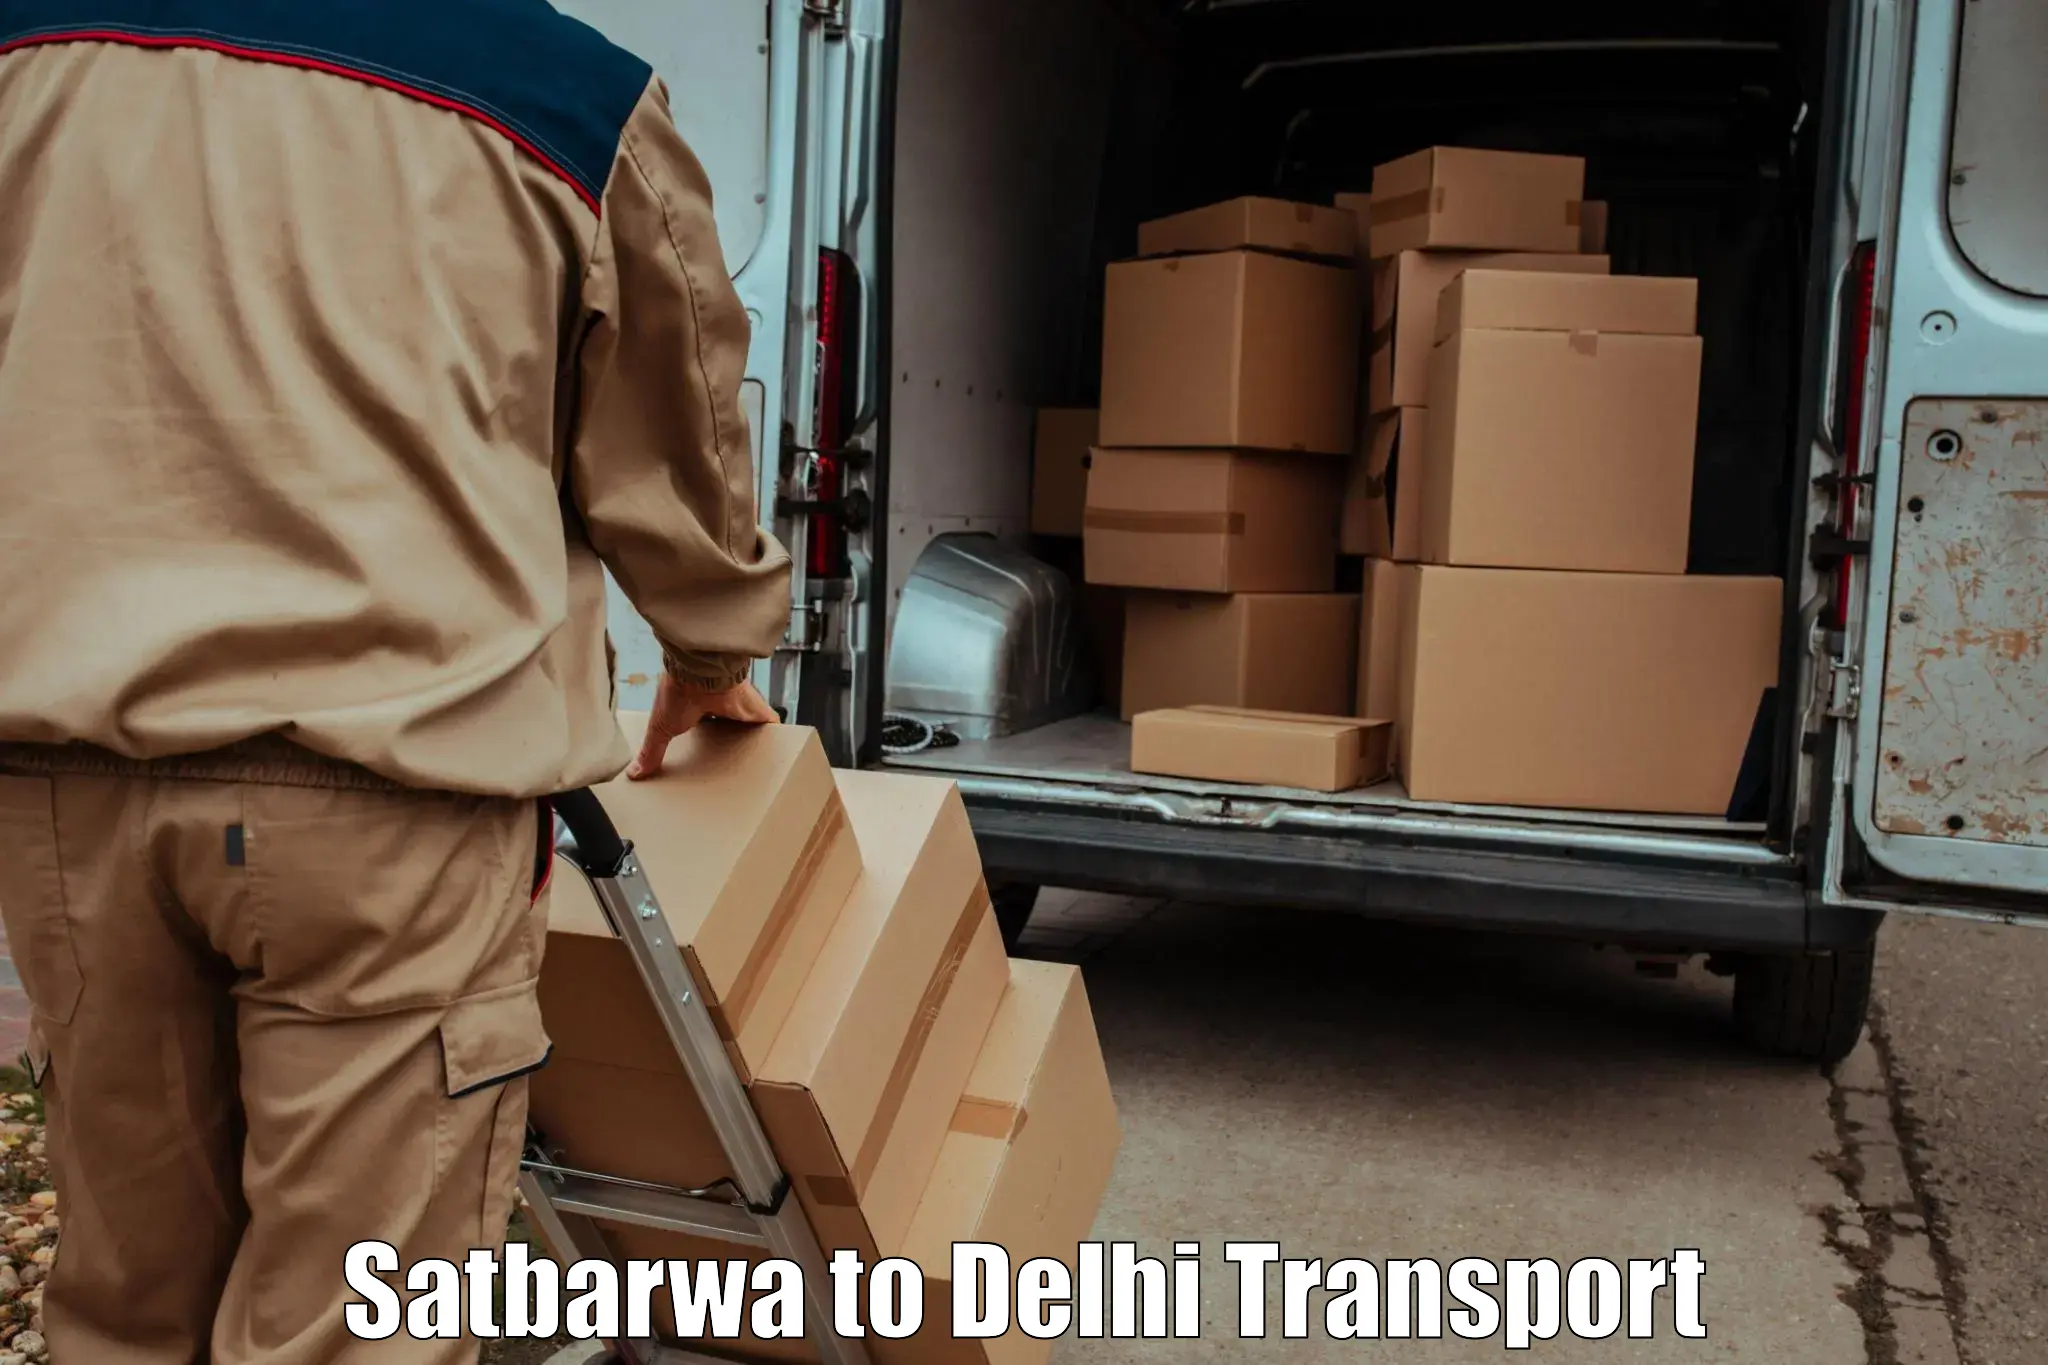 Goods delivery service Satbarwa to IIT Delhi